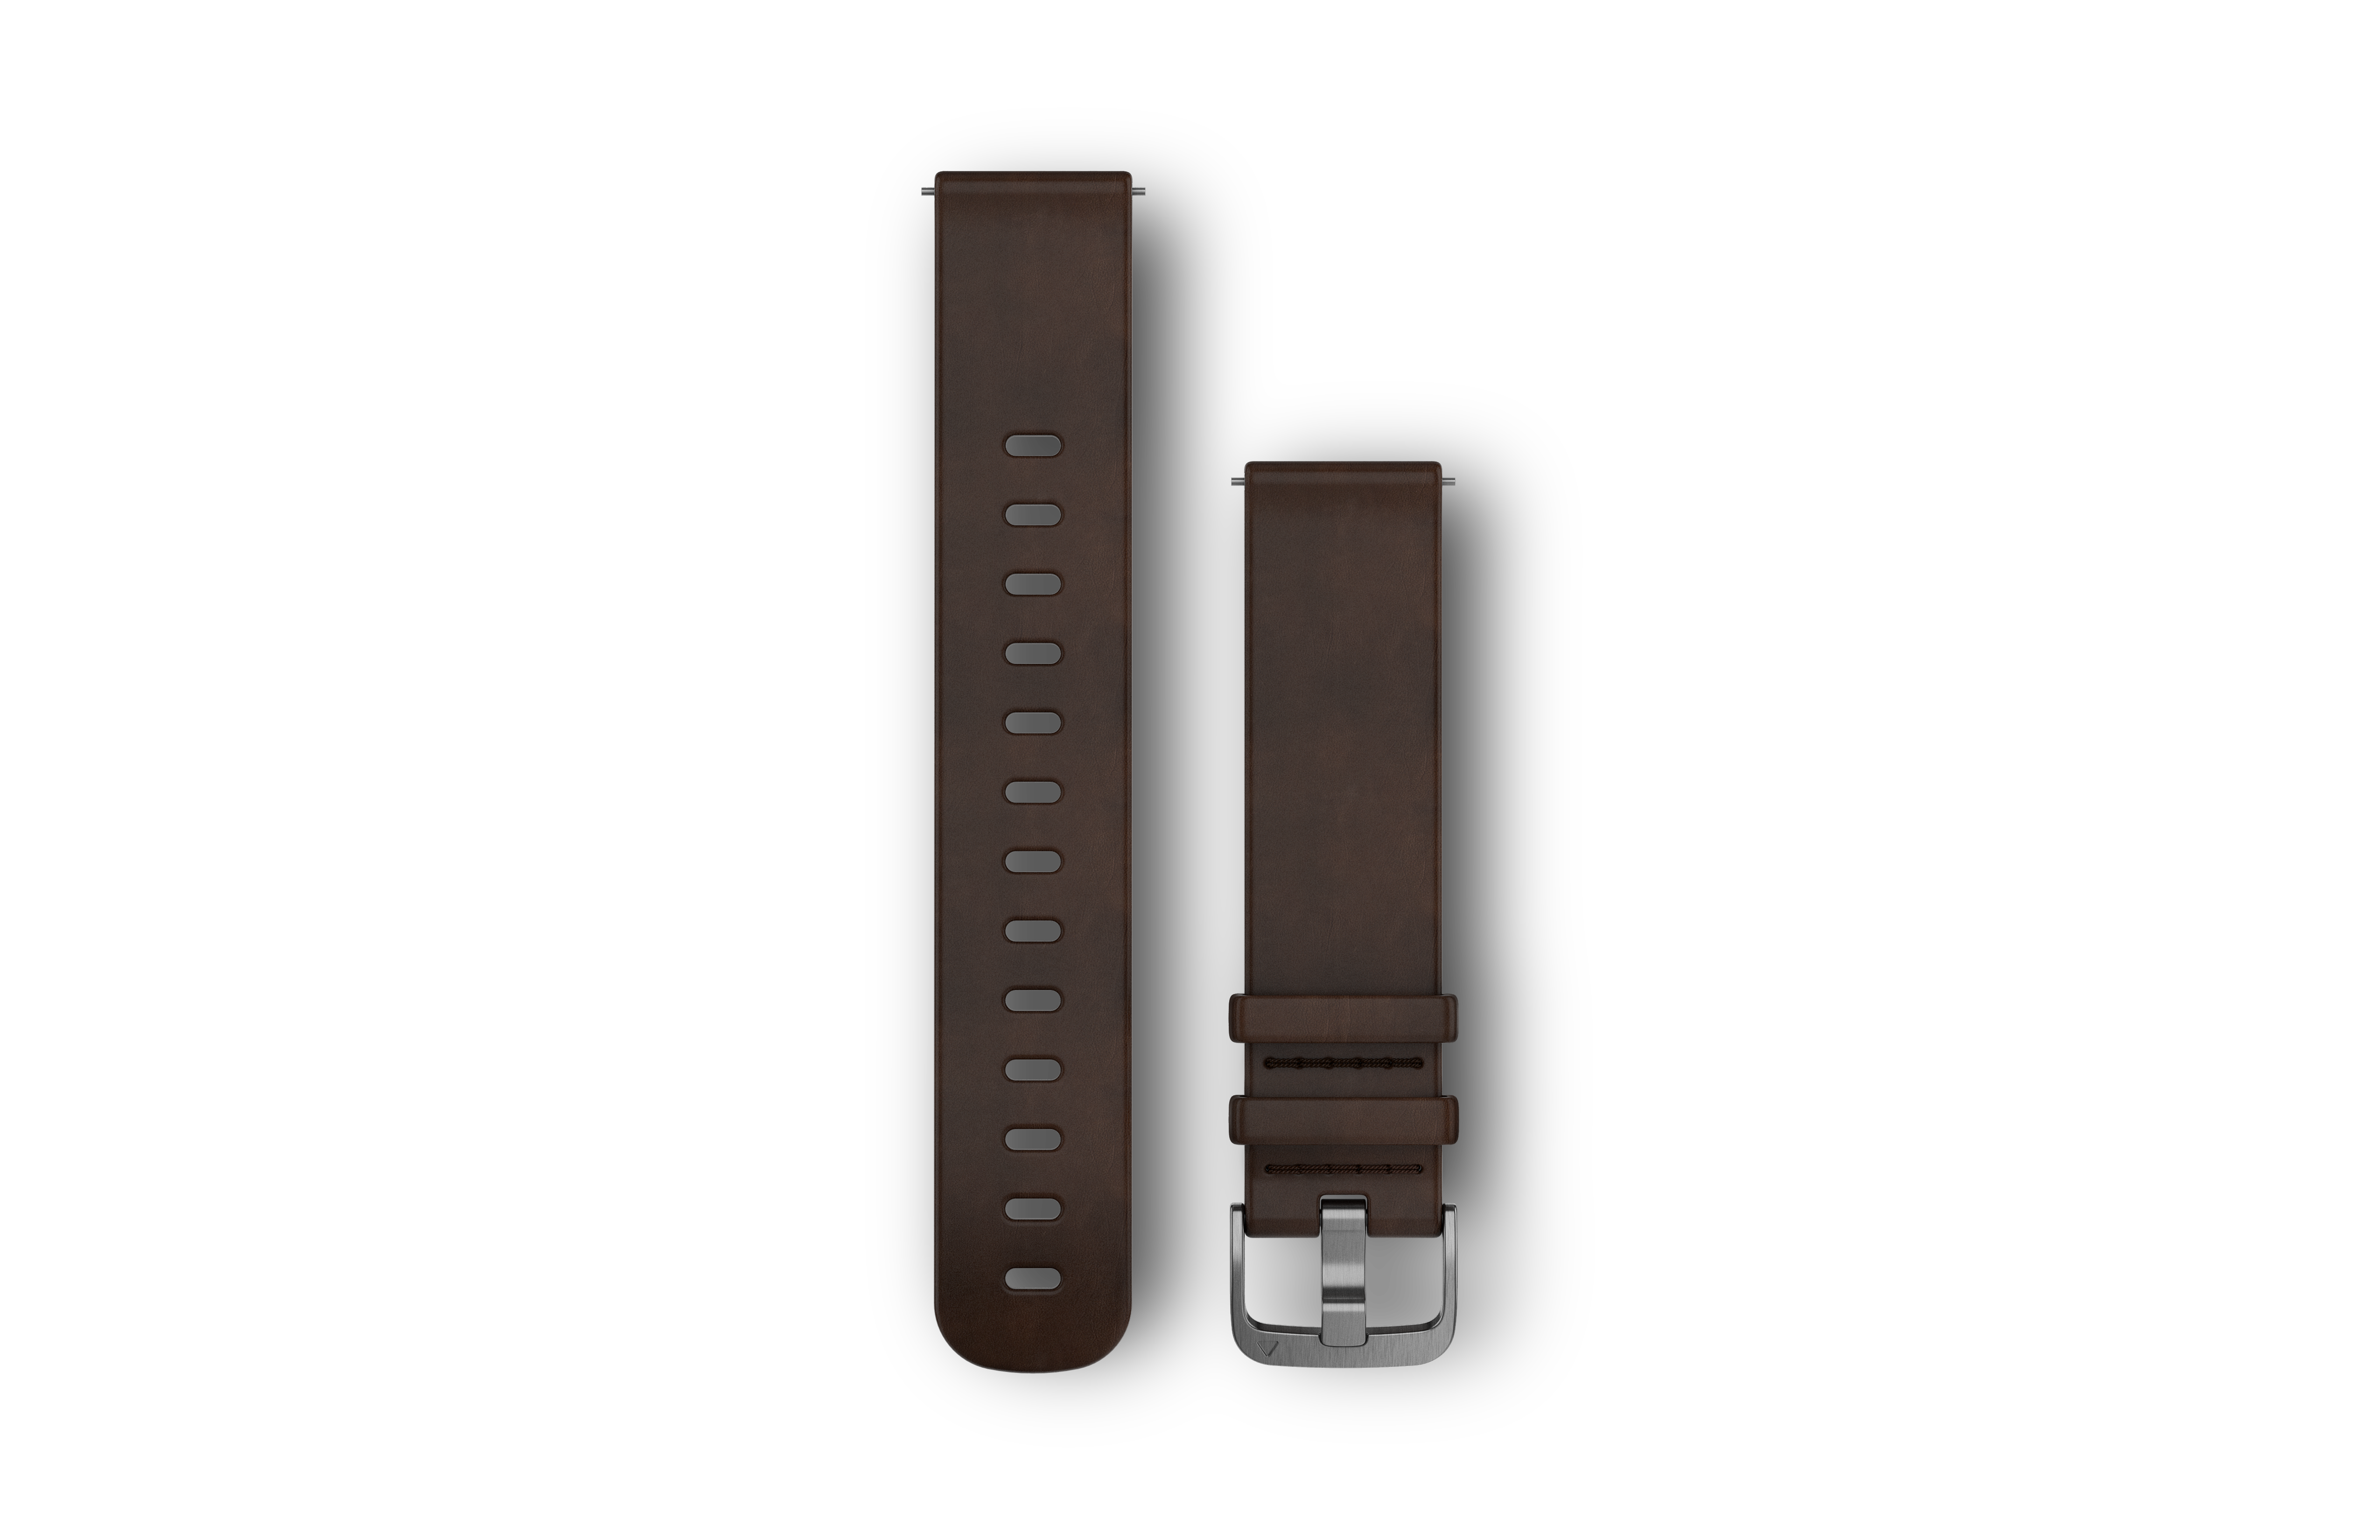 Garmin Quick Release-remme (20 mm), Mørkebrunt læder, sølv hardware